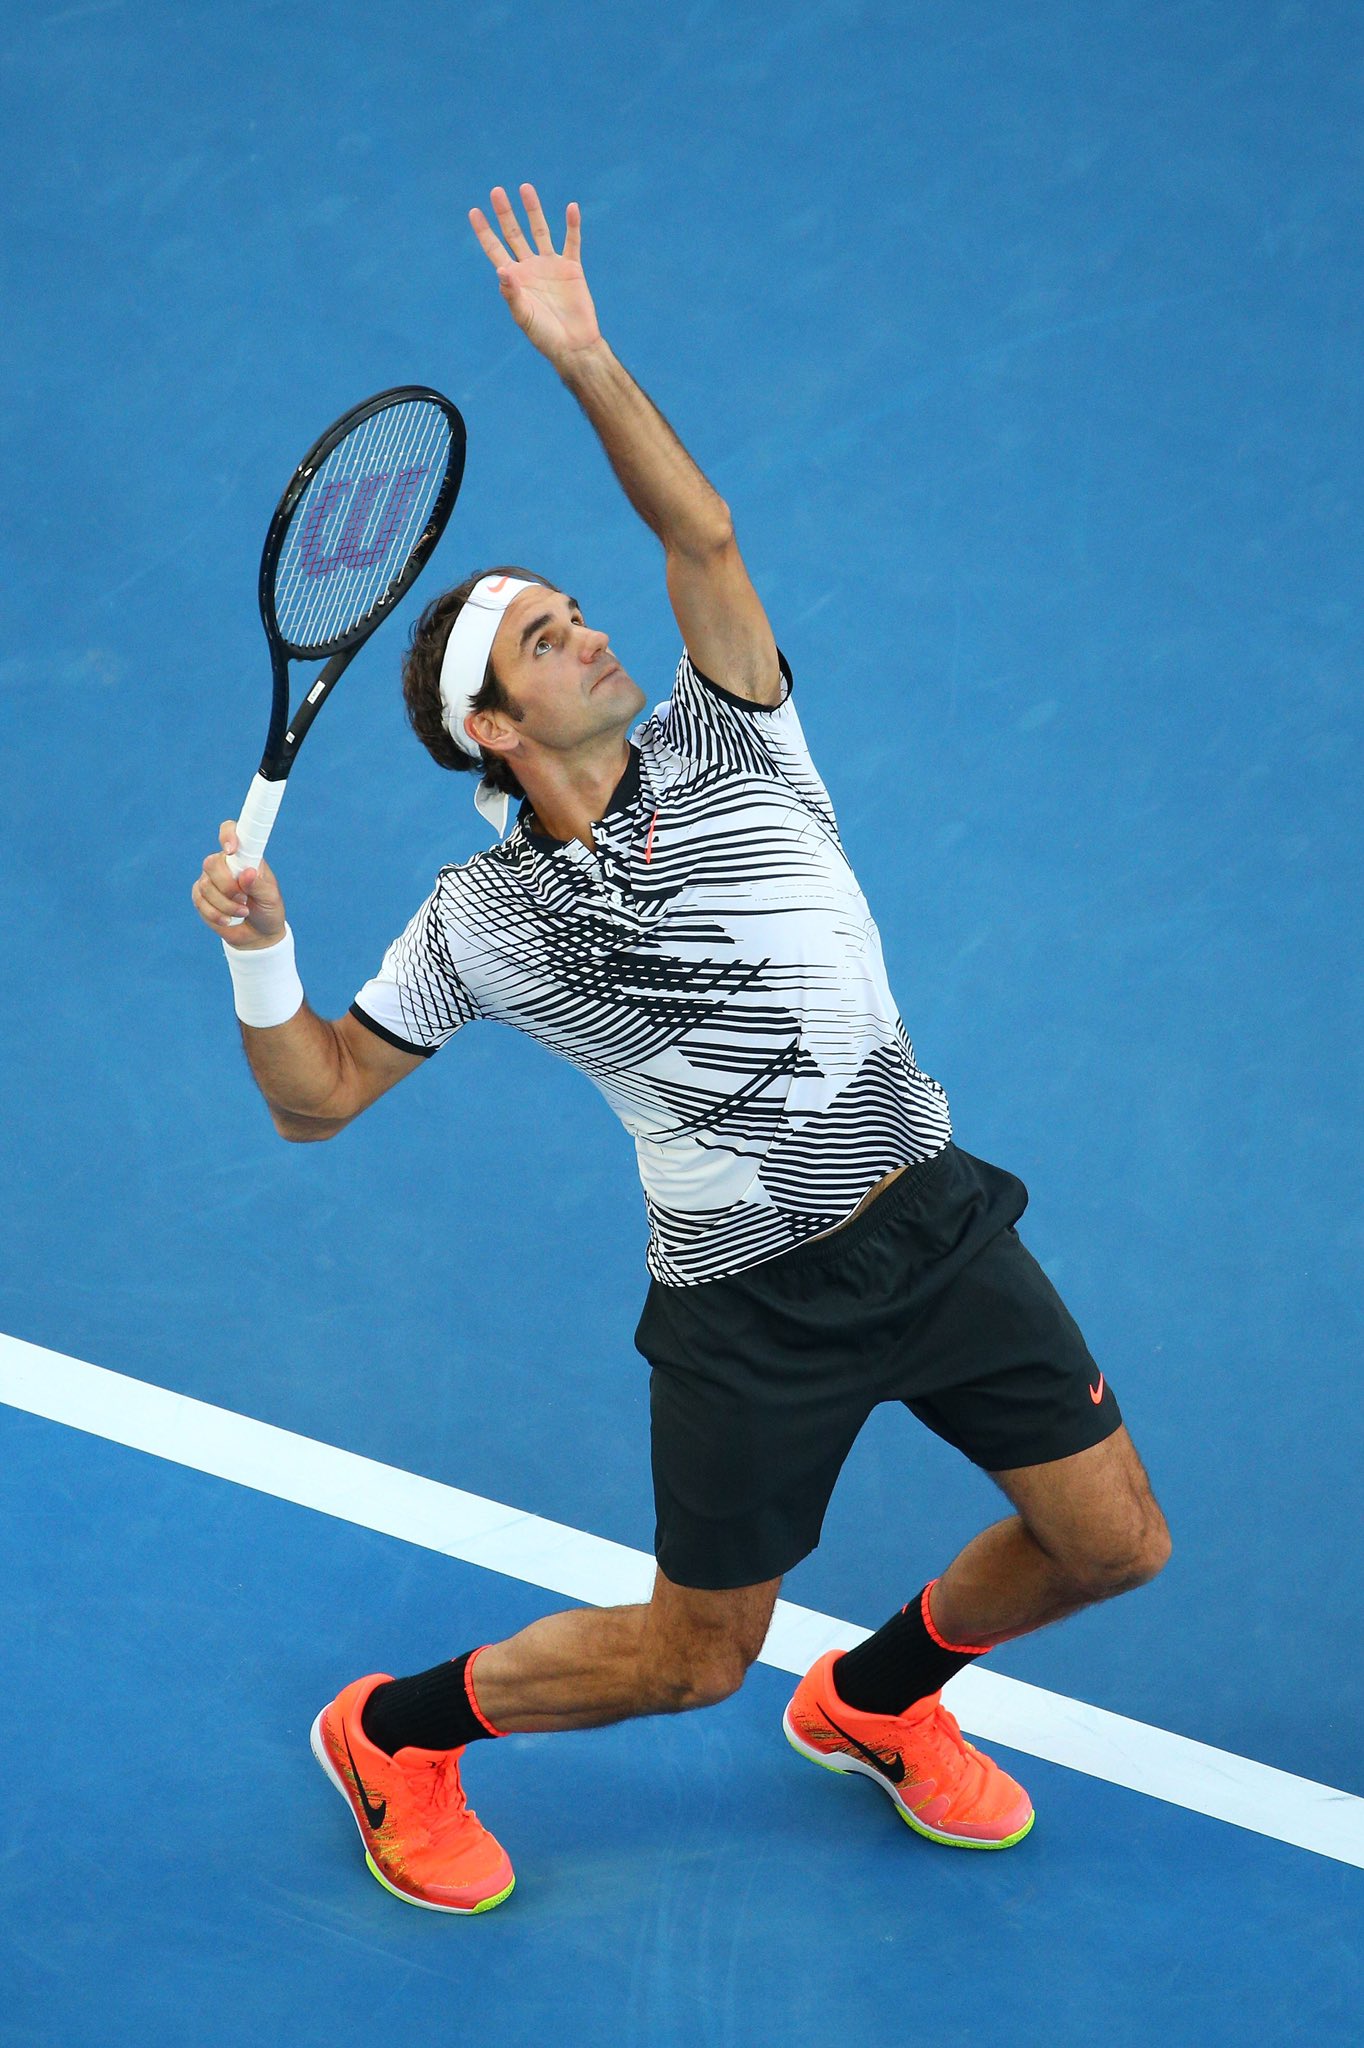 Теннисный игрок. Федерер. Роджер теннисист. Теннисист Федерер. Роджер Федерер на Australian open.